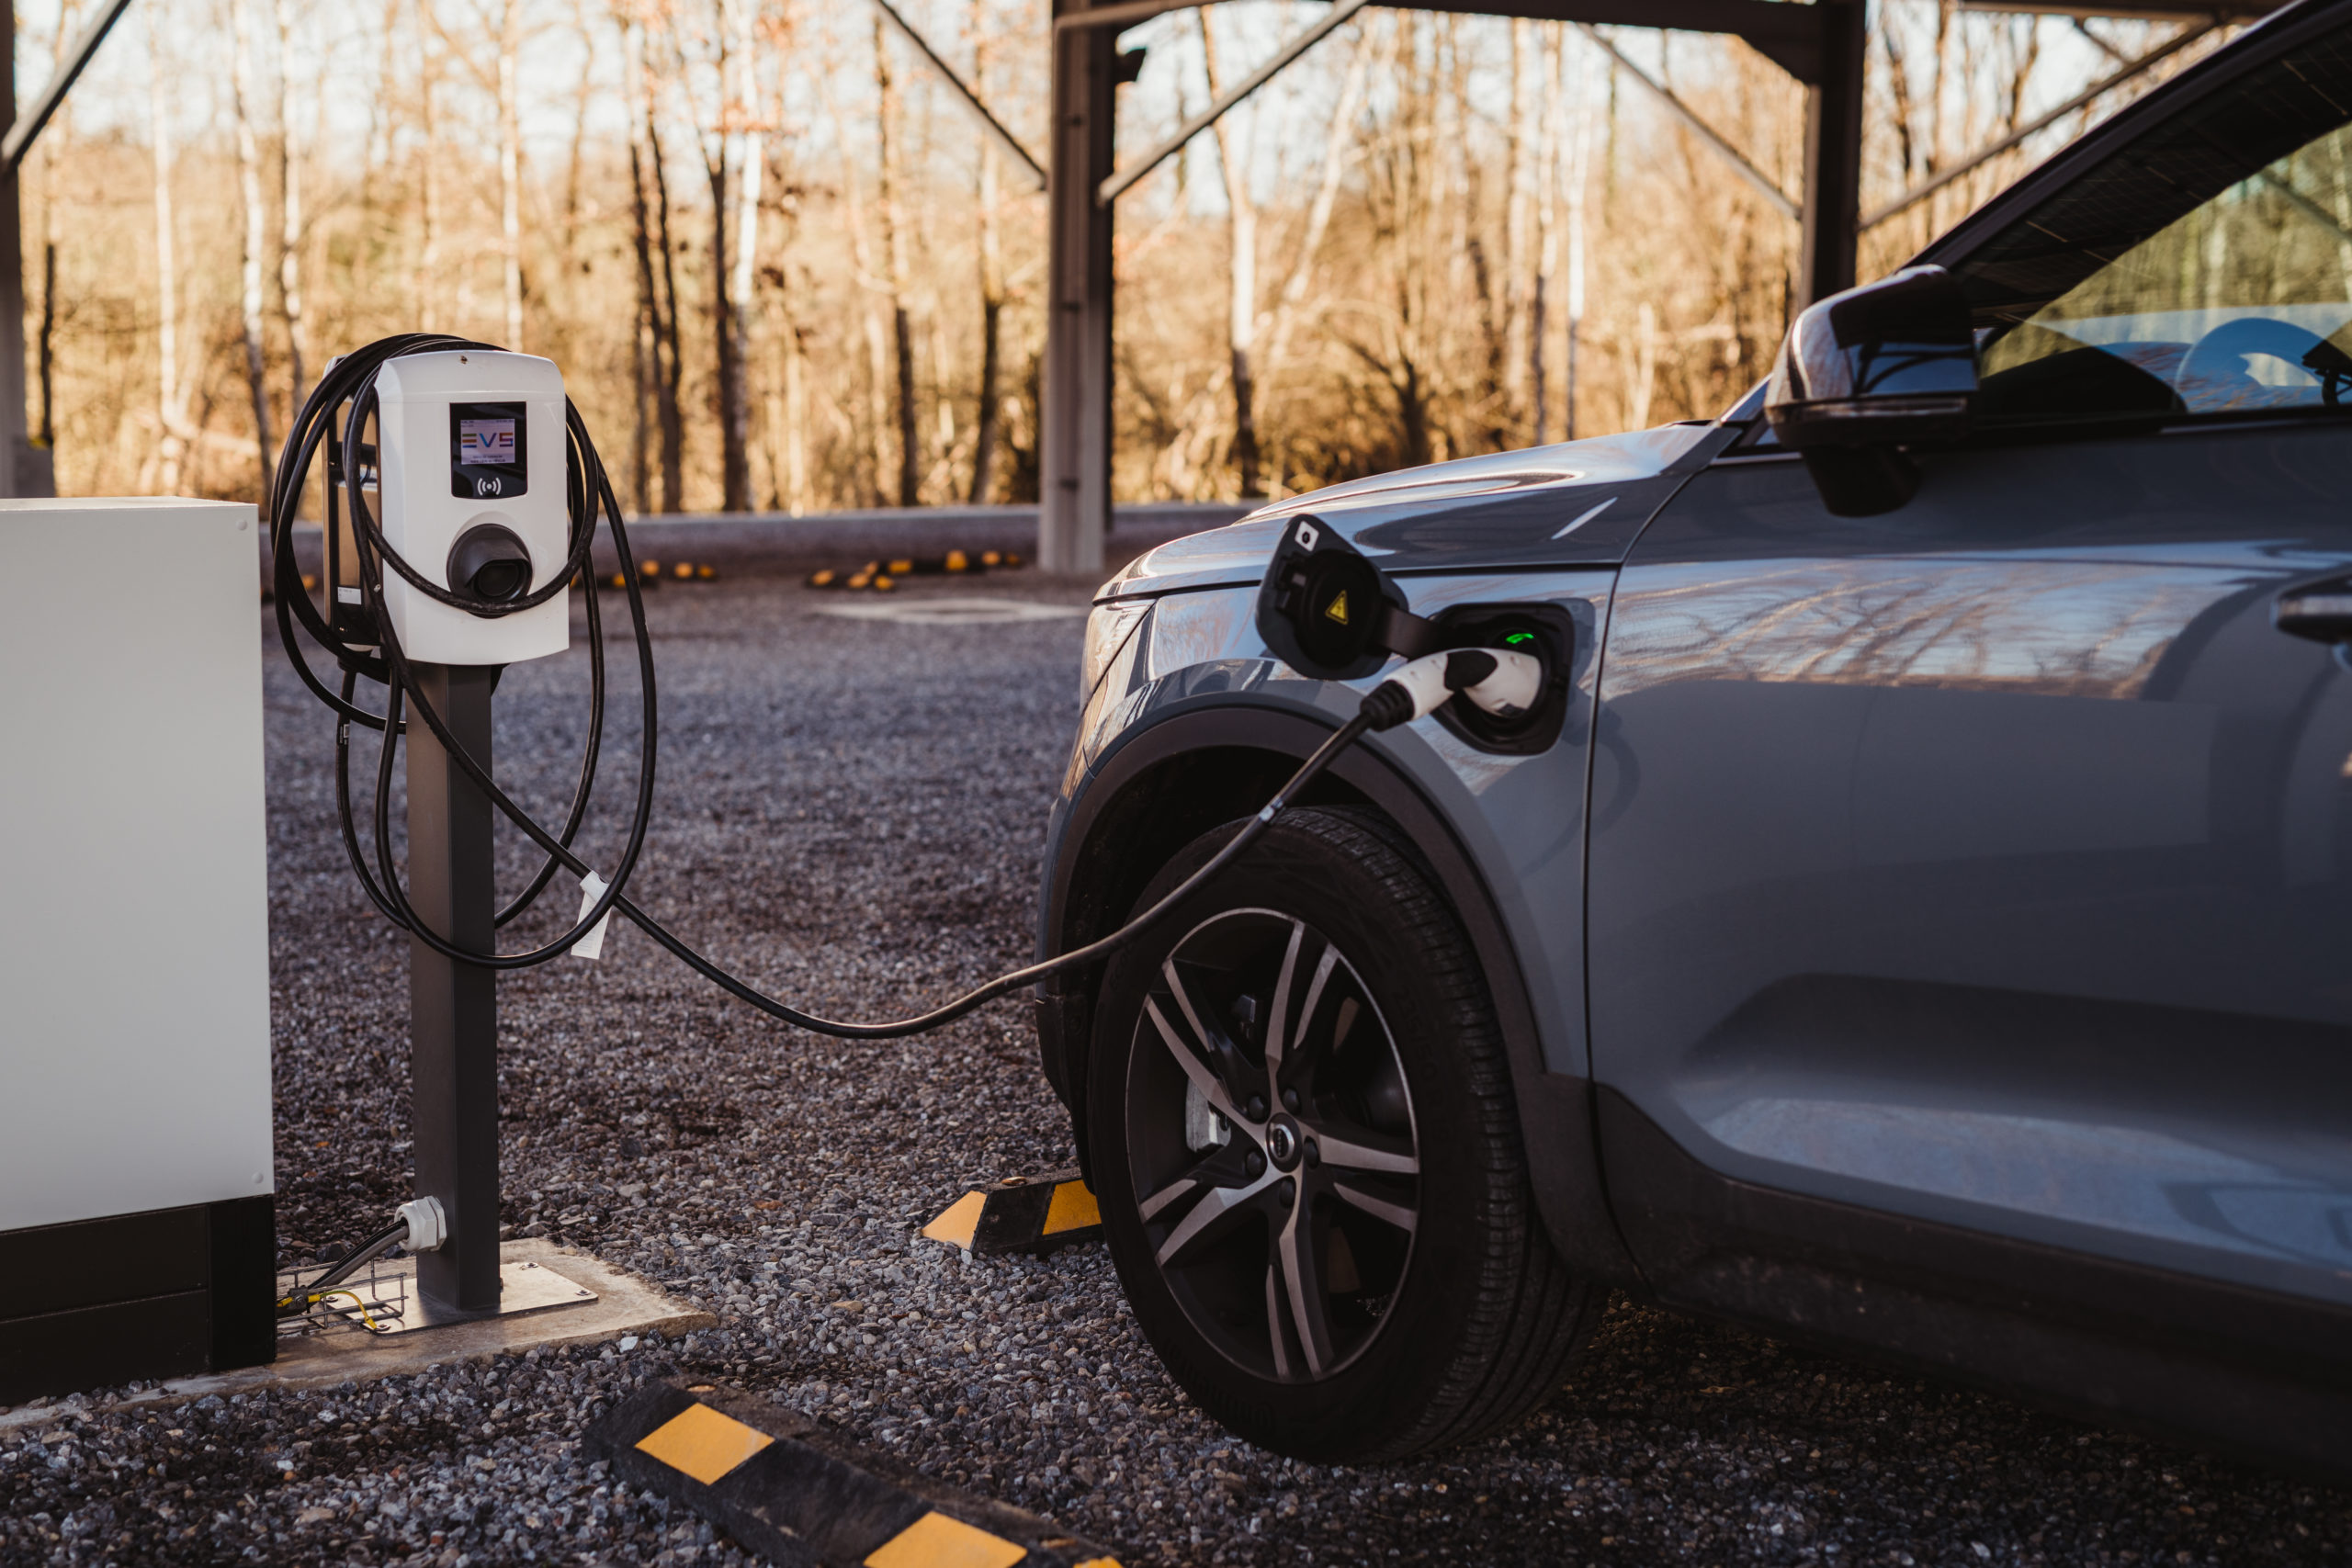 Borne de recharge voiture électrique : prix et installation